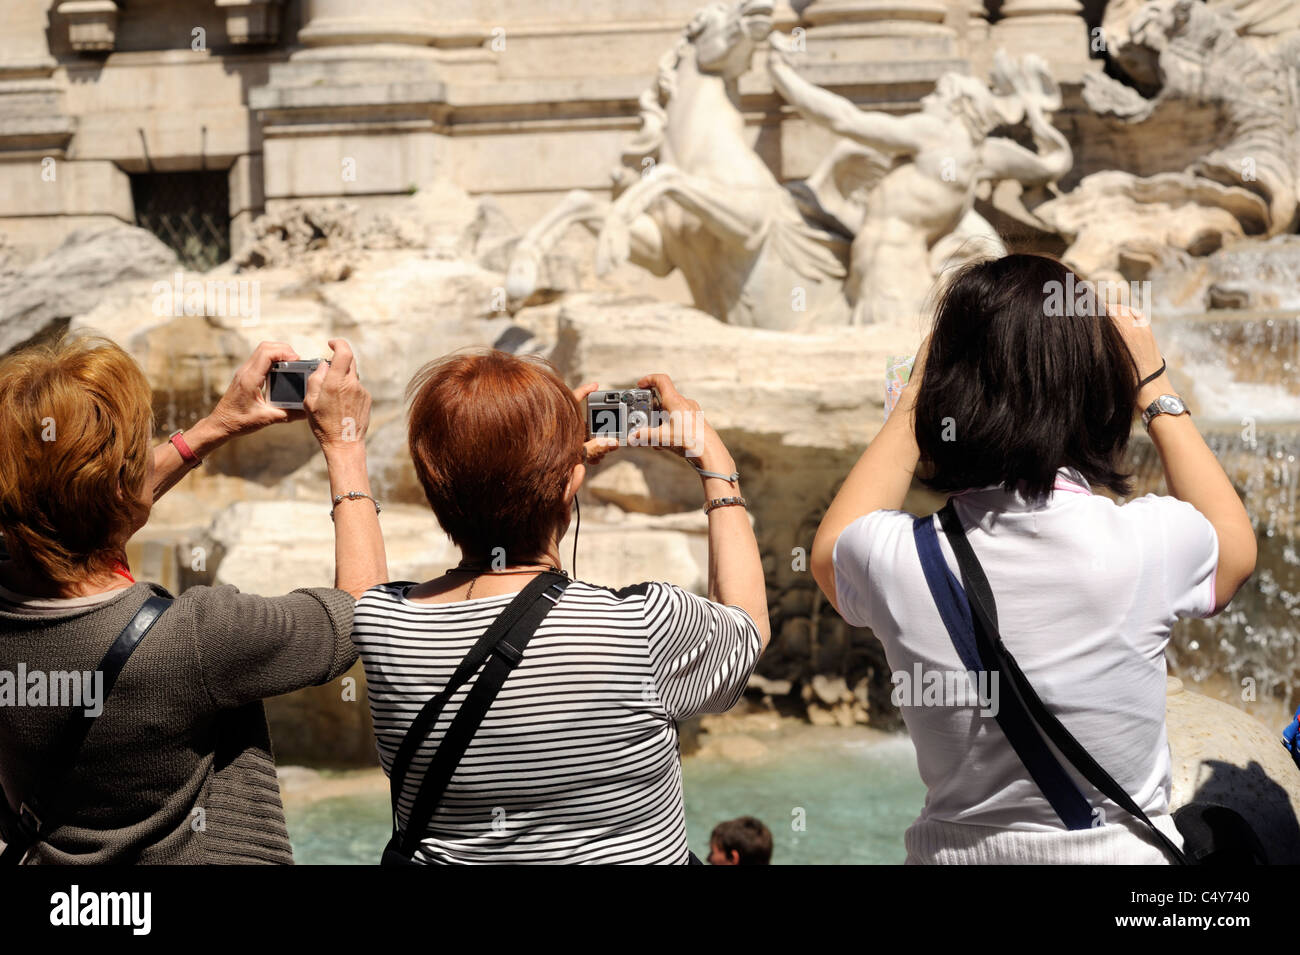 Italia, Roma, la fontana de Trevi, turistas tomando fotos Foto de stock